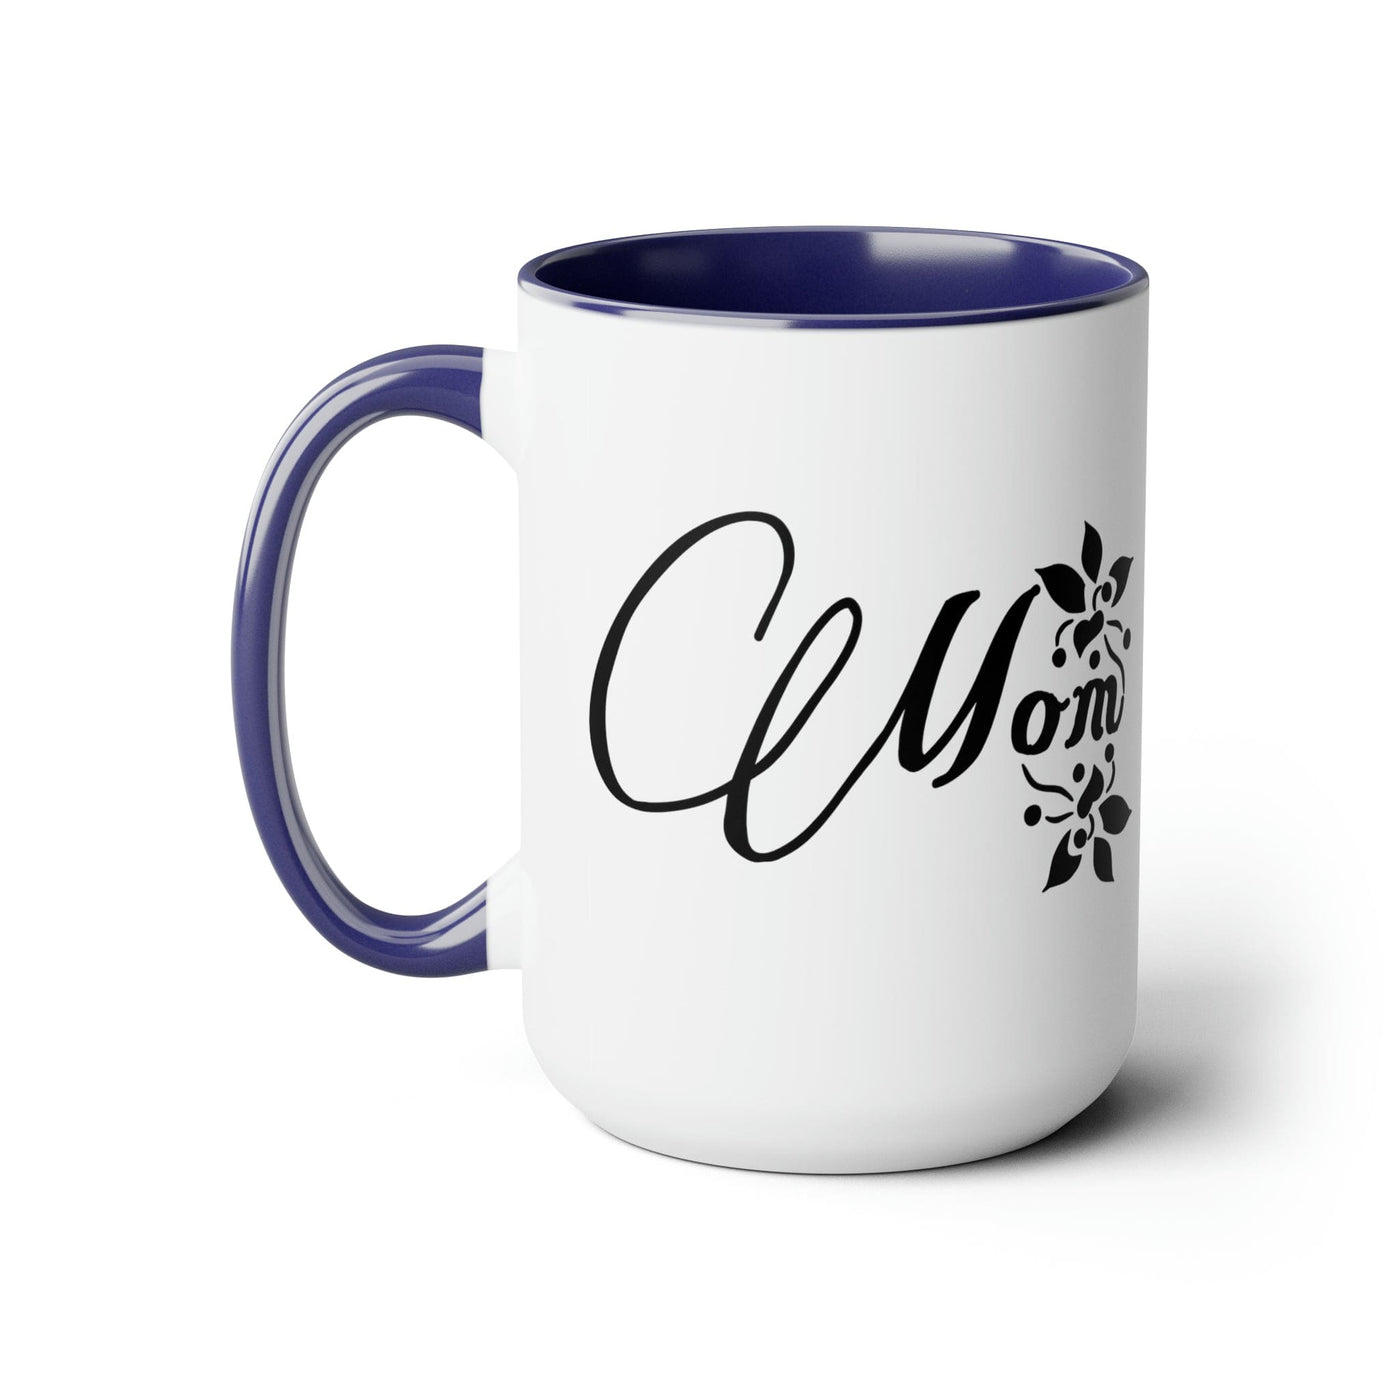 Accent Ceramic Coffee Mug 15oz - Mom Appreciation For Mothers - Decorative